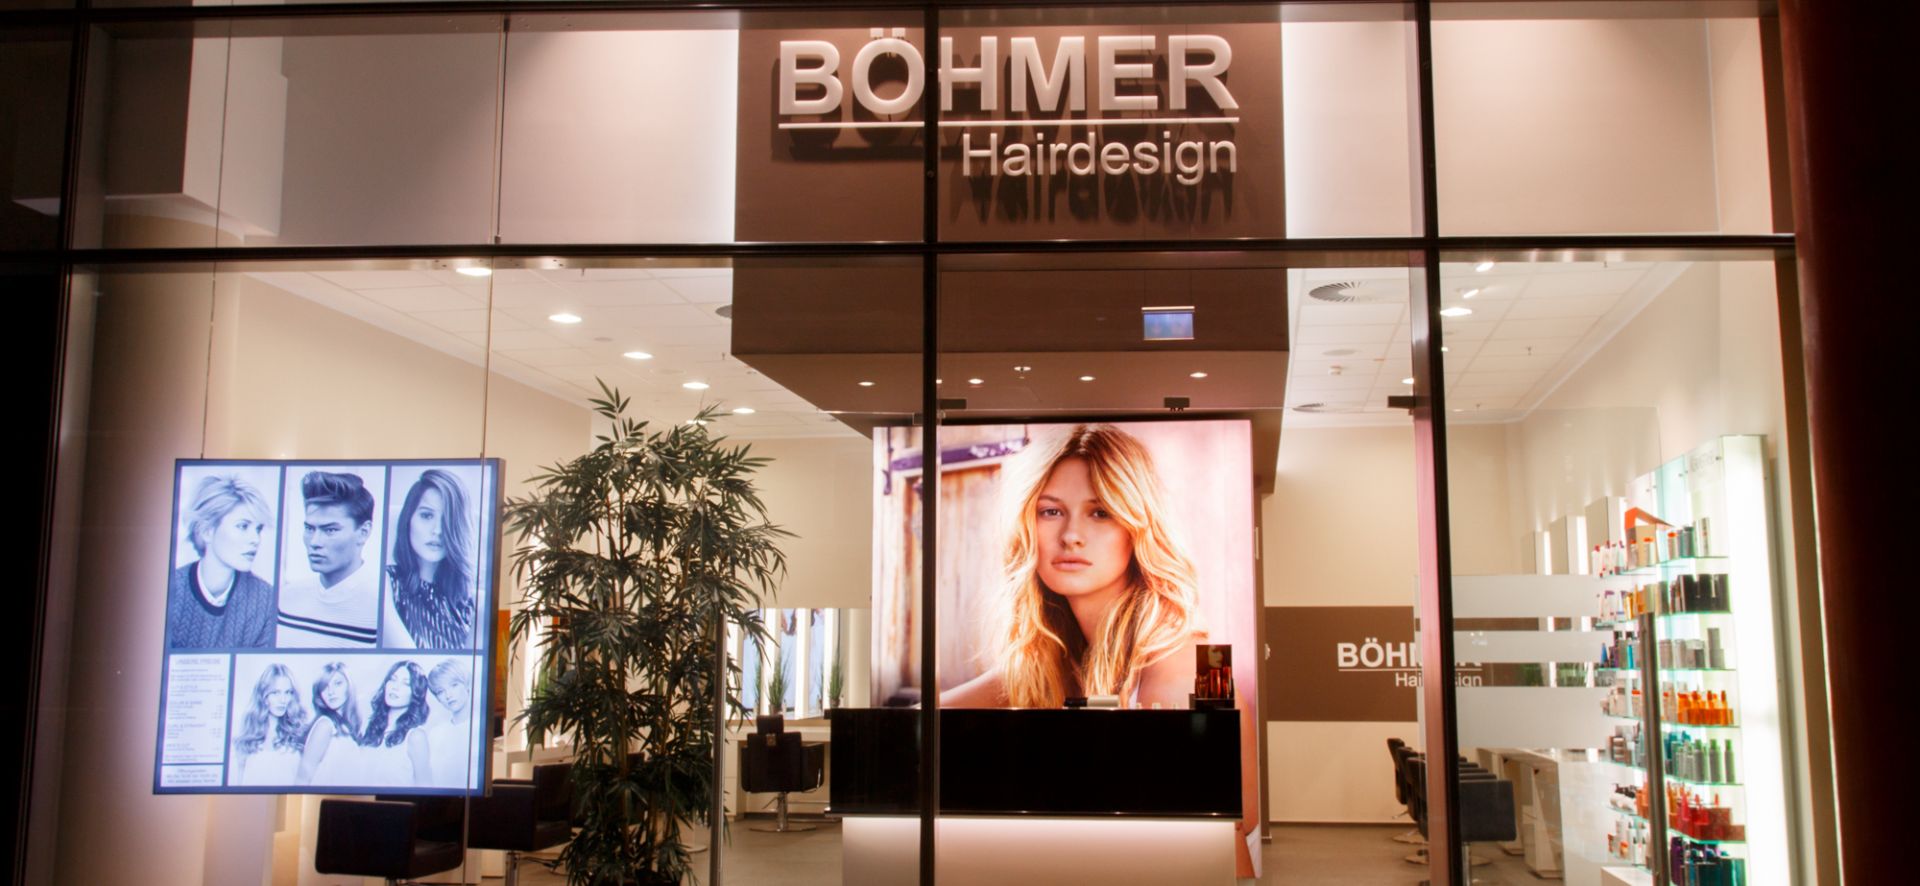 Böhmer Hairdesign